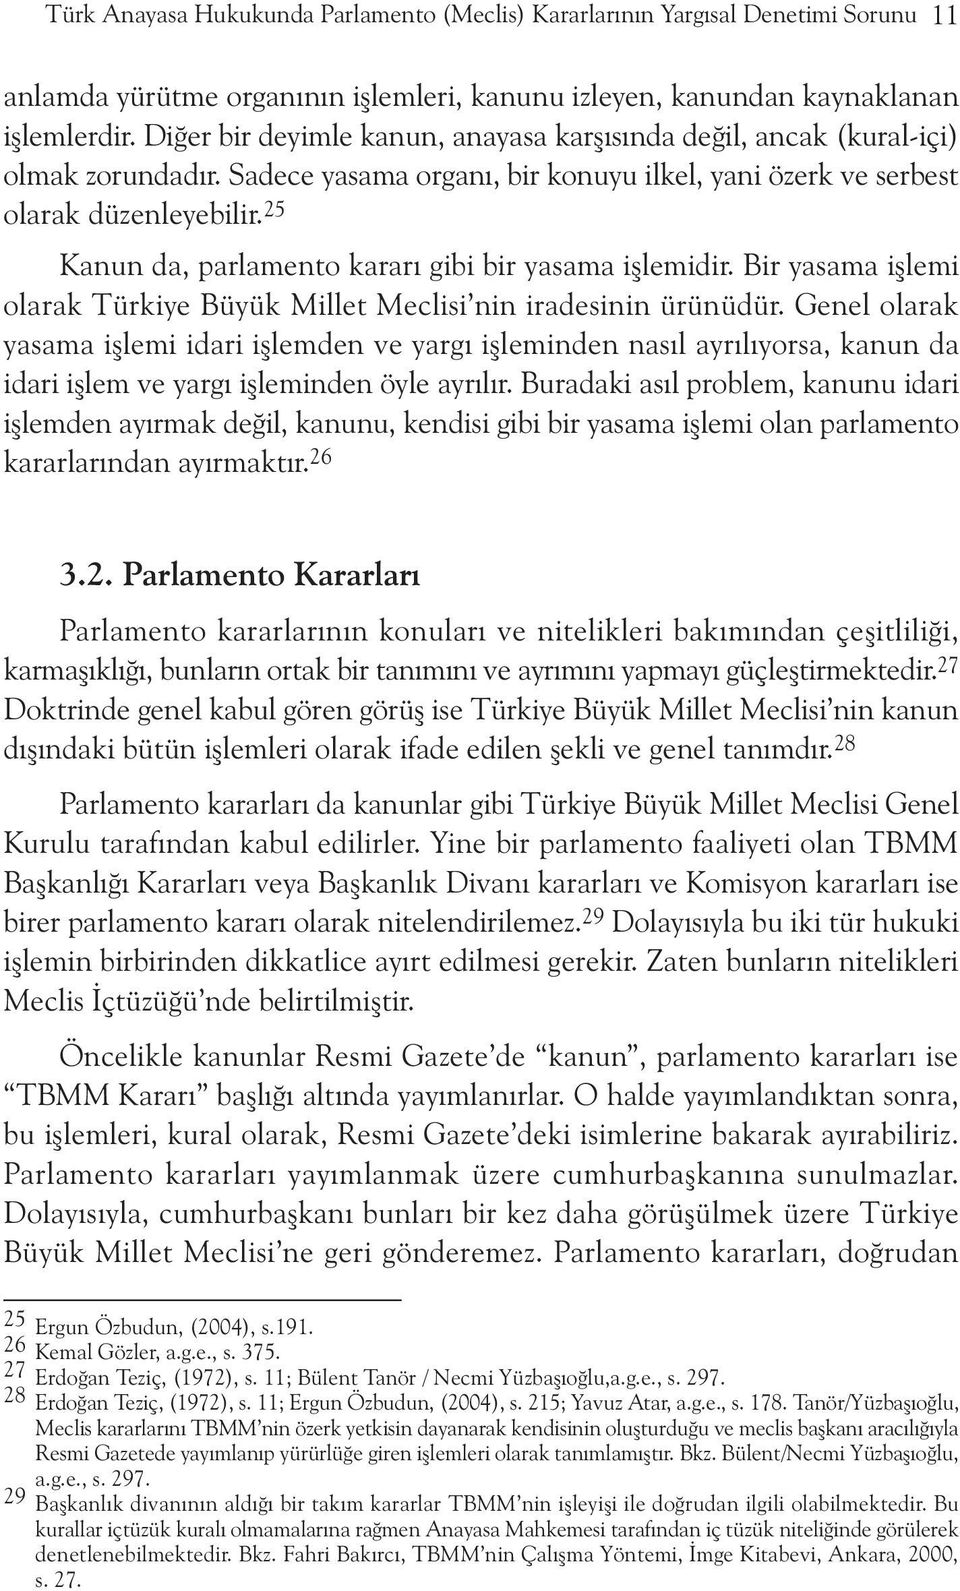 25 Kanun da, parlamento kararý gibi bir yasama iþlemidir. Bir yasama iþlemi olarak Türkiye Büyük Millet Meclisi nin iradesinin ürünüdür.